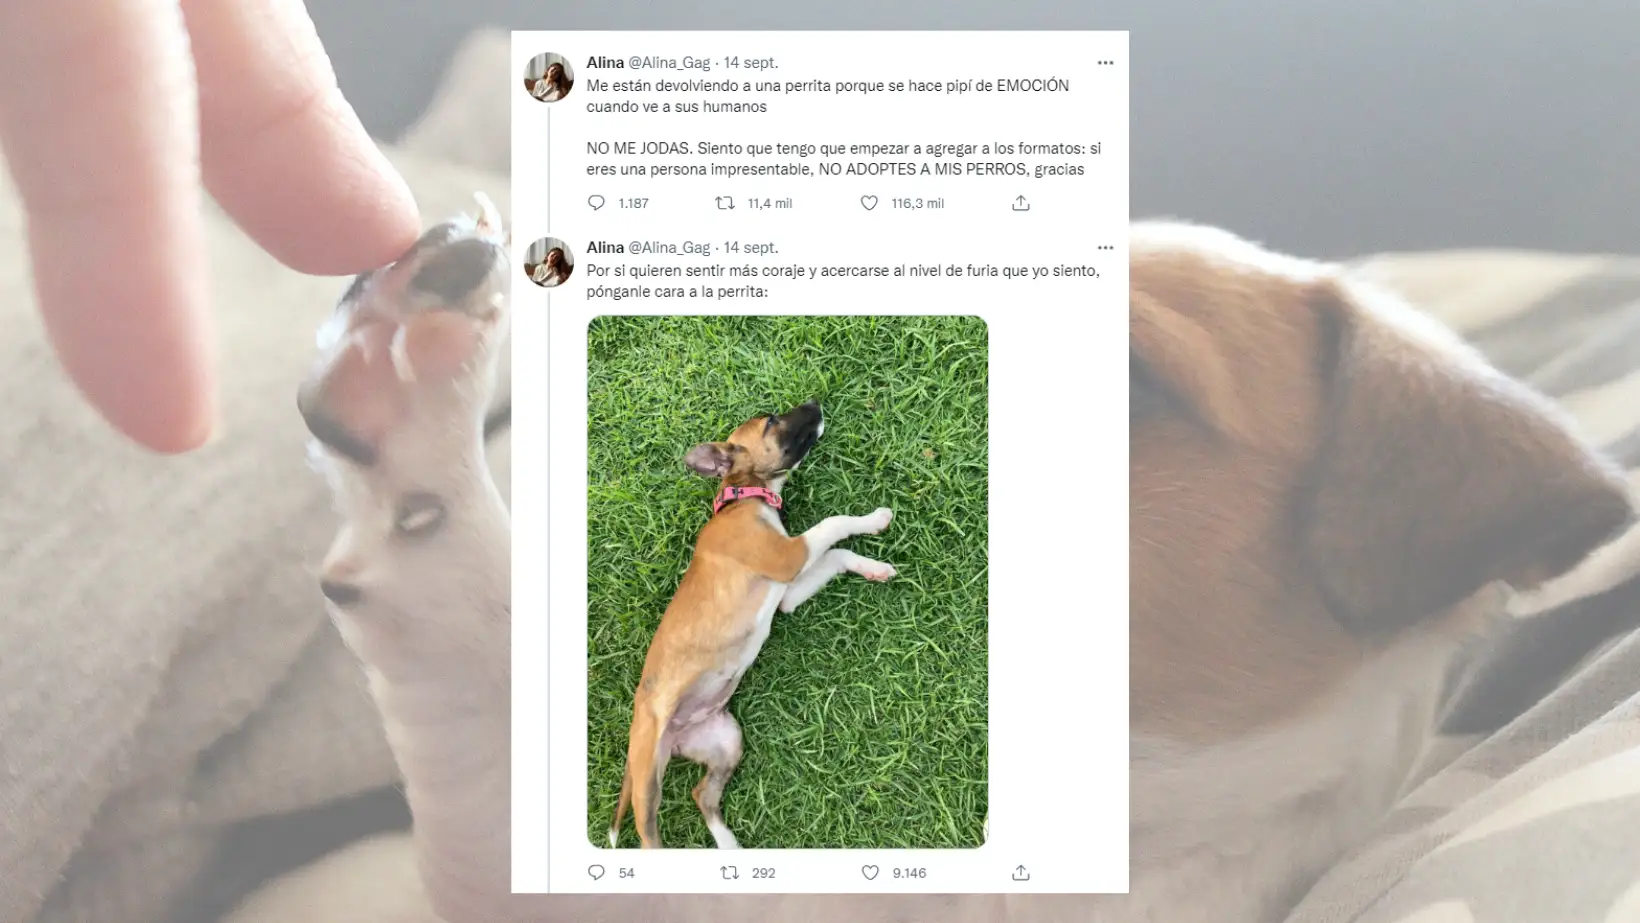 "Me están devolviendo a una perrita porque se hace pis de emoción": El tuit de una chica que ha indignado en redes